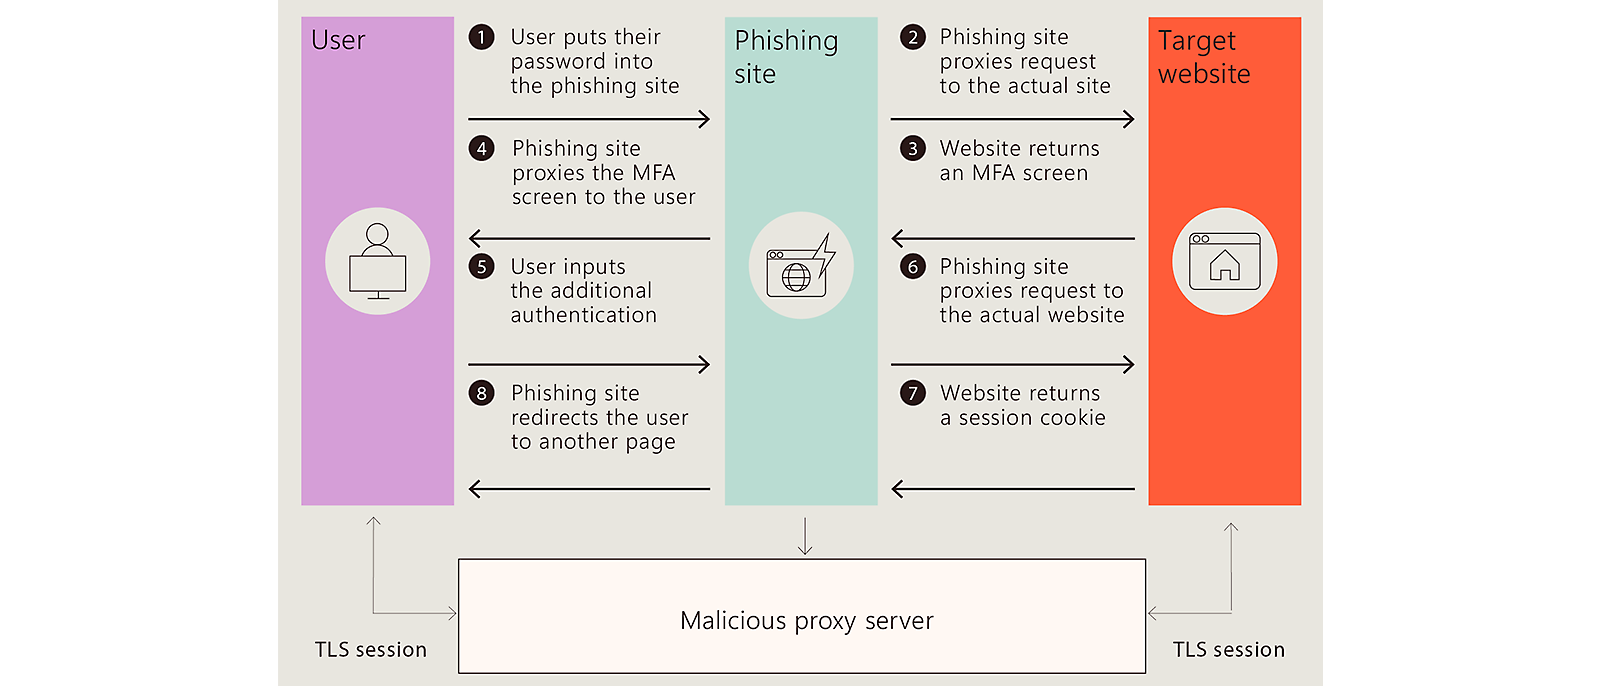 Escenario de phishing: Usuario introduce contraseña, MFA, redirigido; proxy malicioso implicado